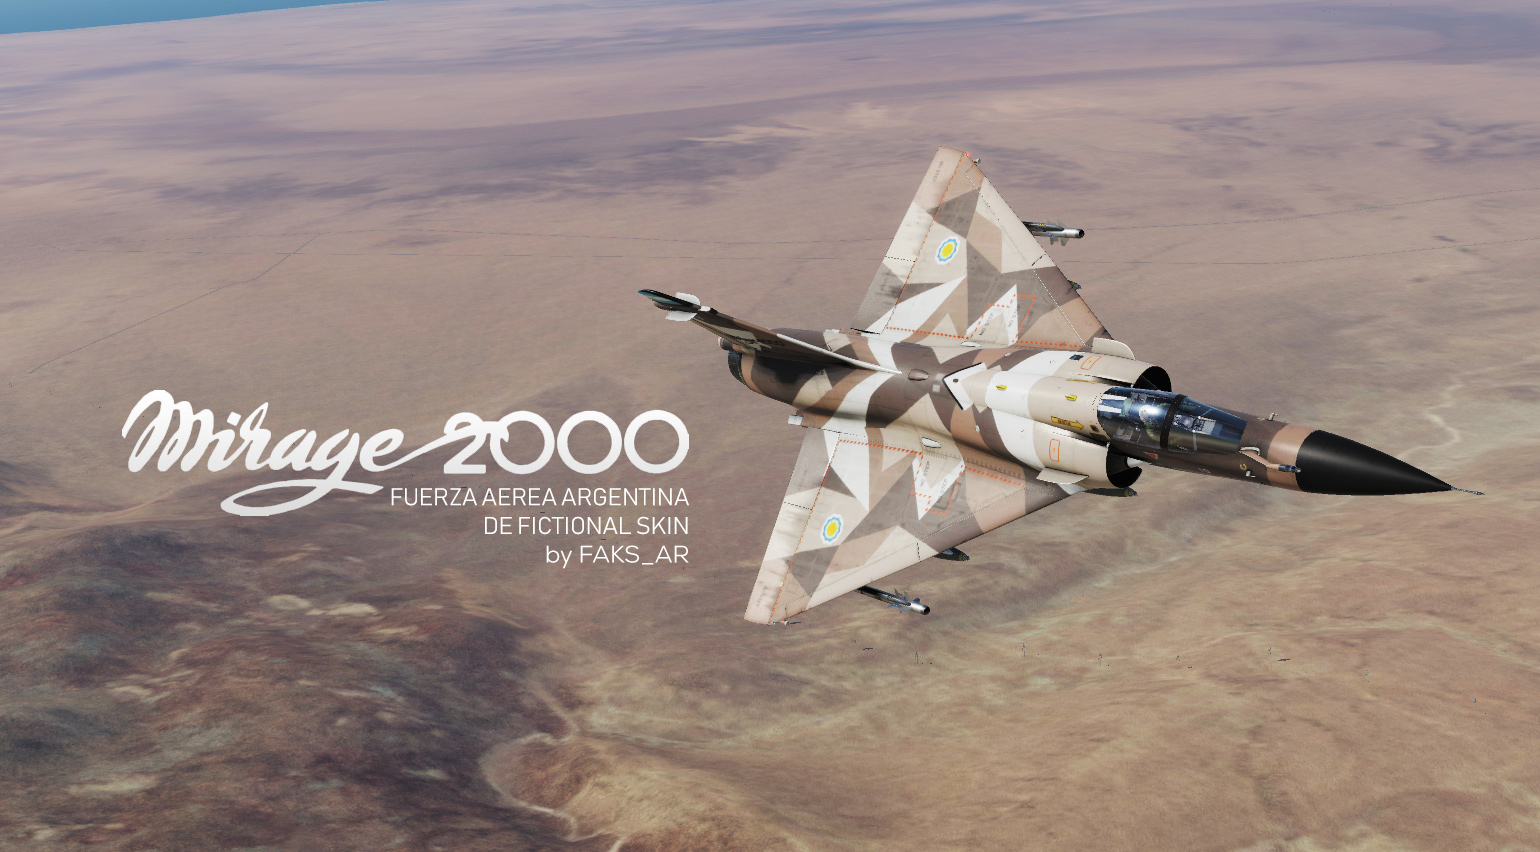 Argentine Mirage 2000C DE Fictional